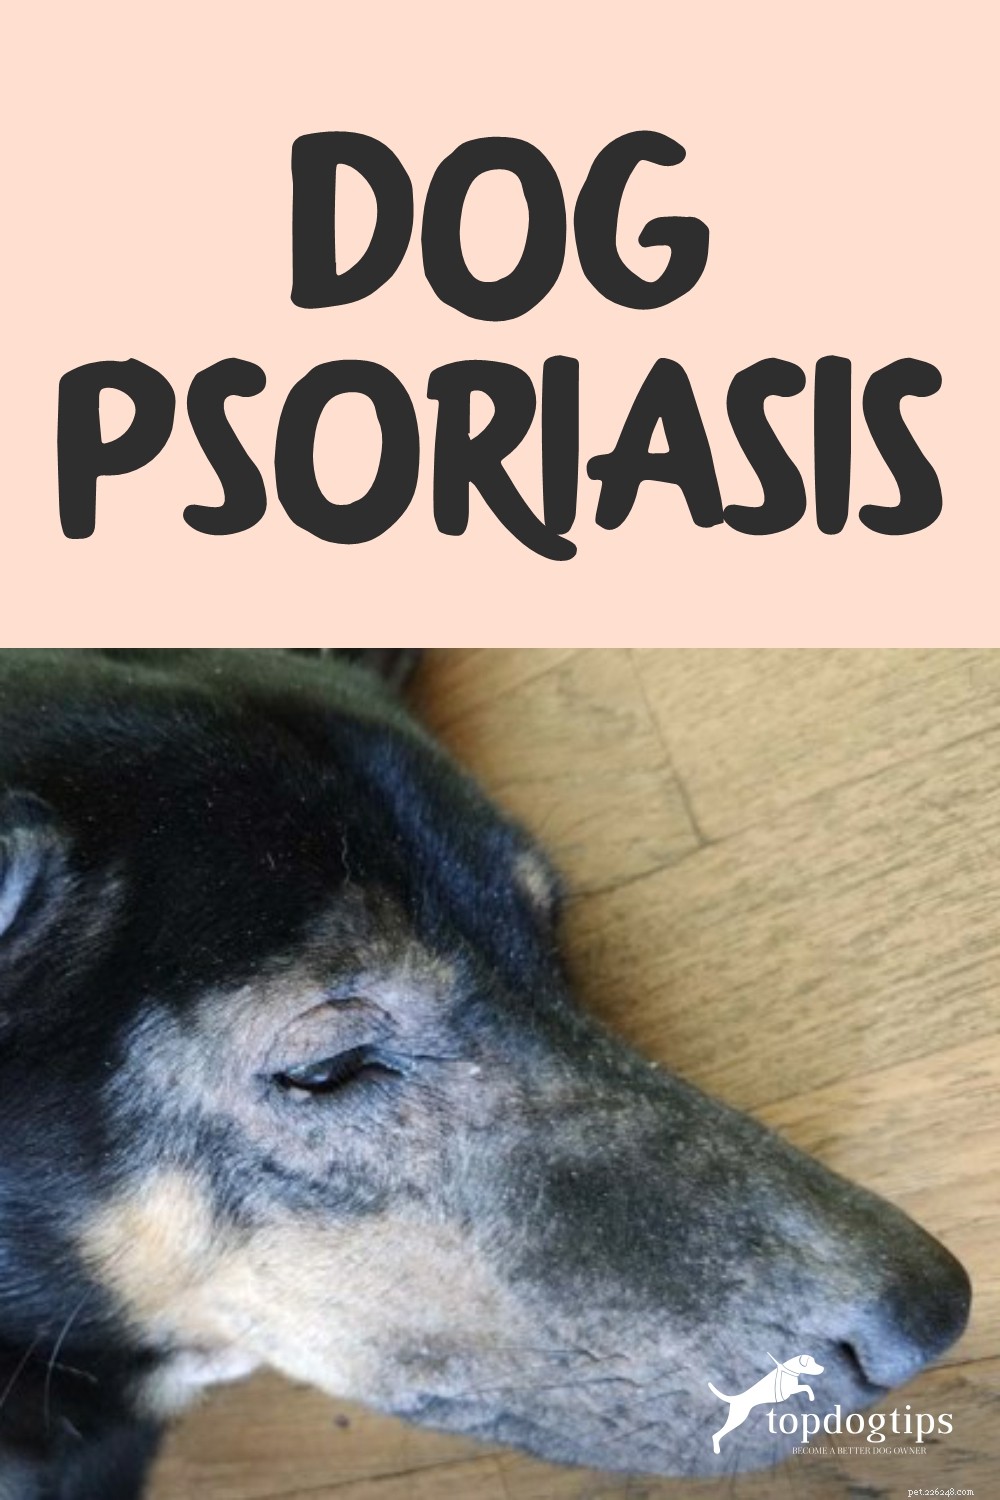 Псориаз у собак:признаки, причины, лечение и профилактика